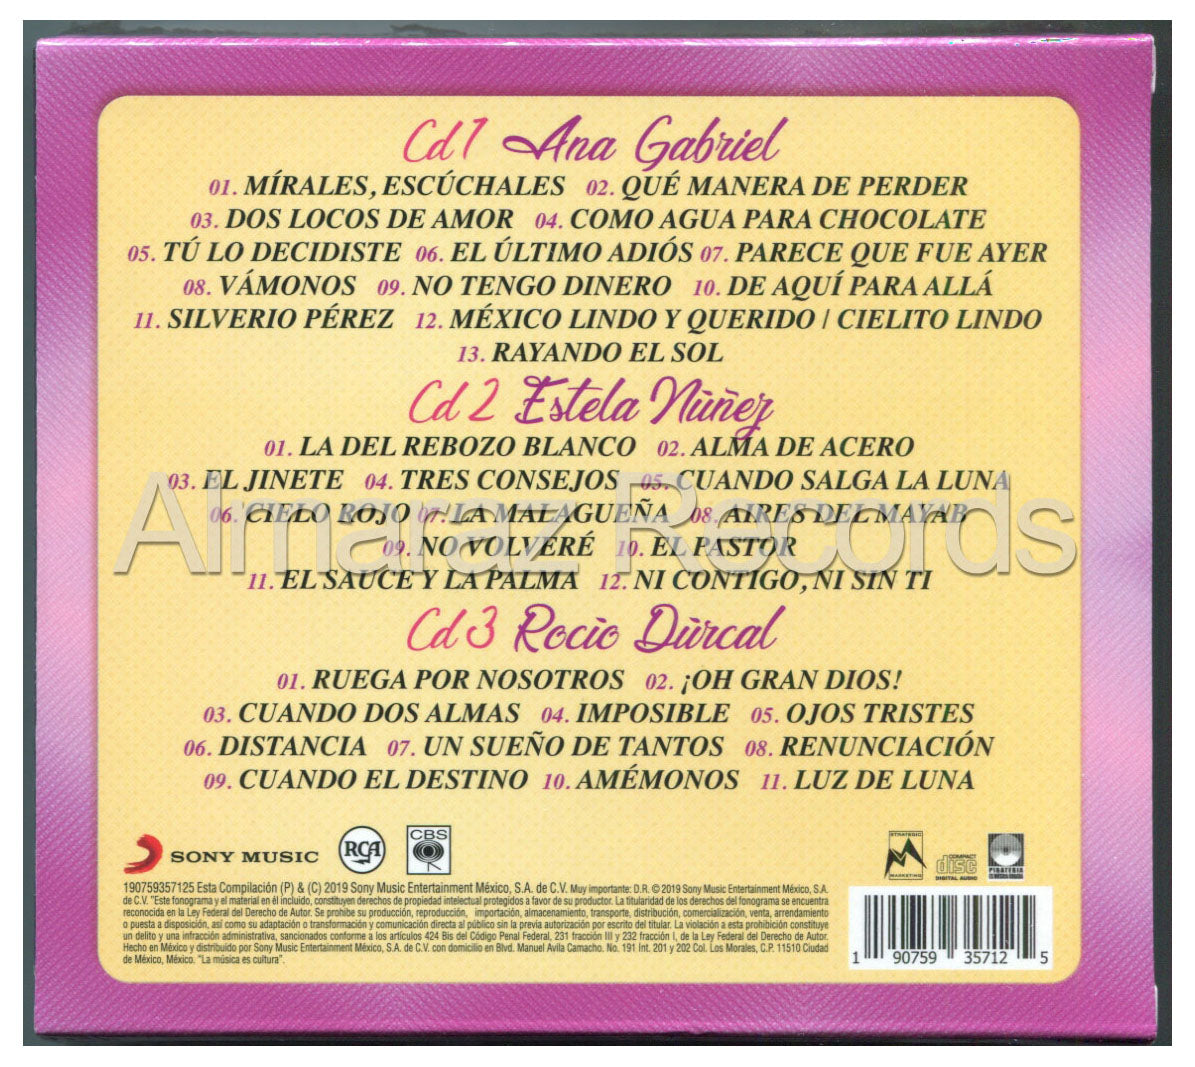 2 Siglos De Musica Estela Nuñez / Ana Gabriel / Rocio Durcal 3CD